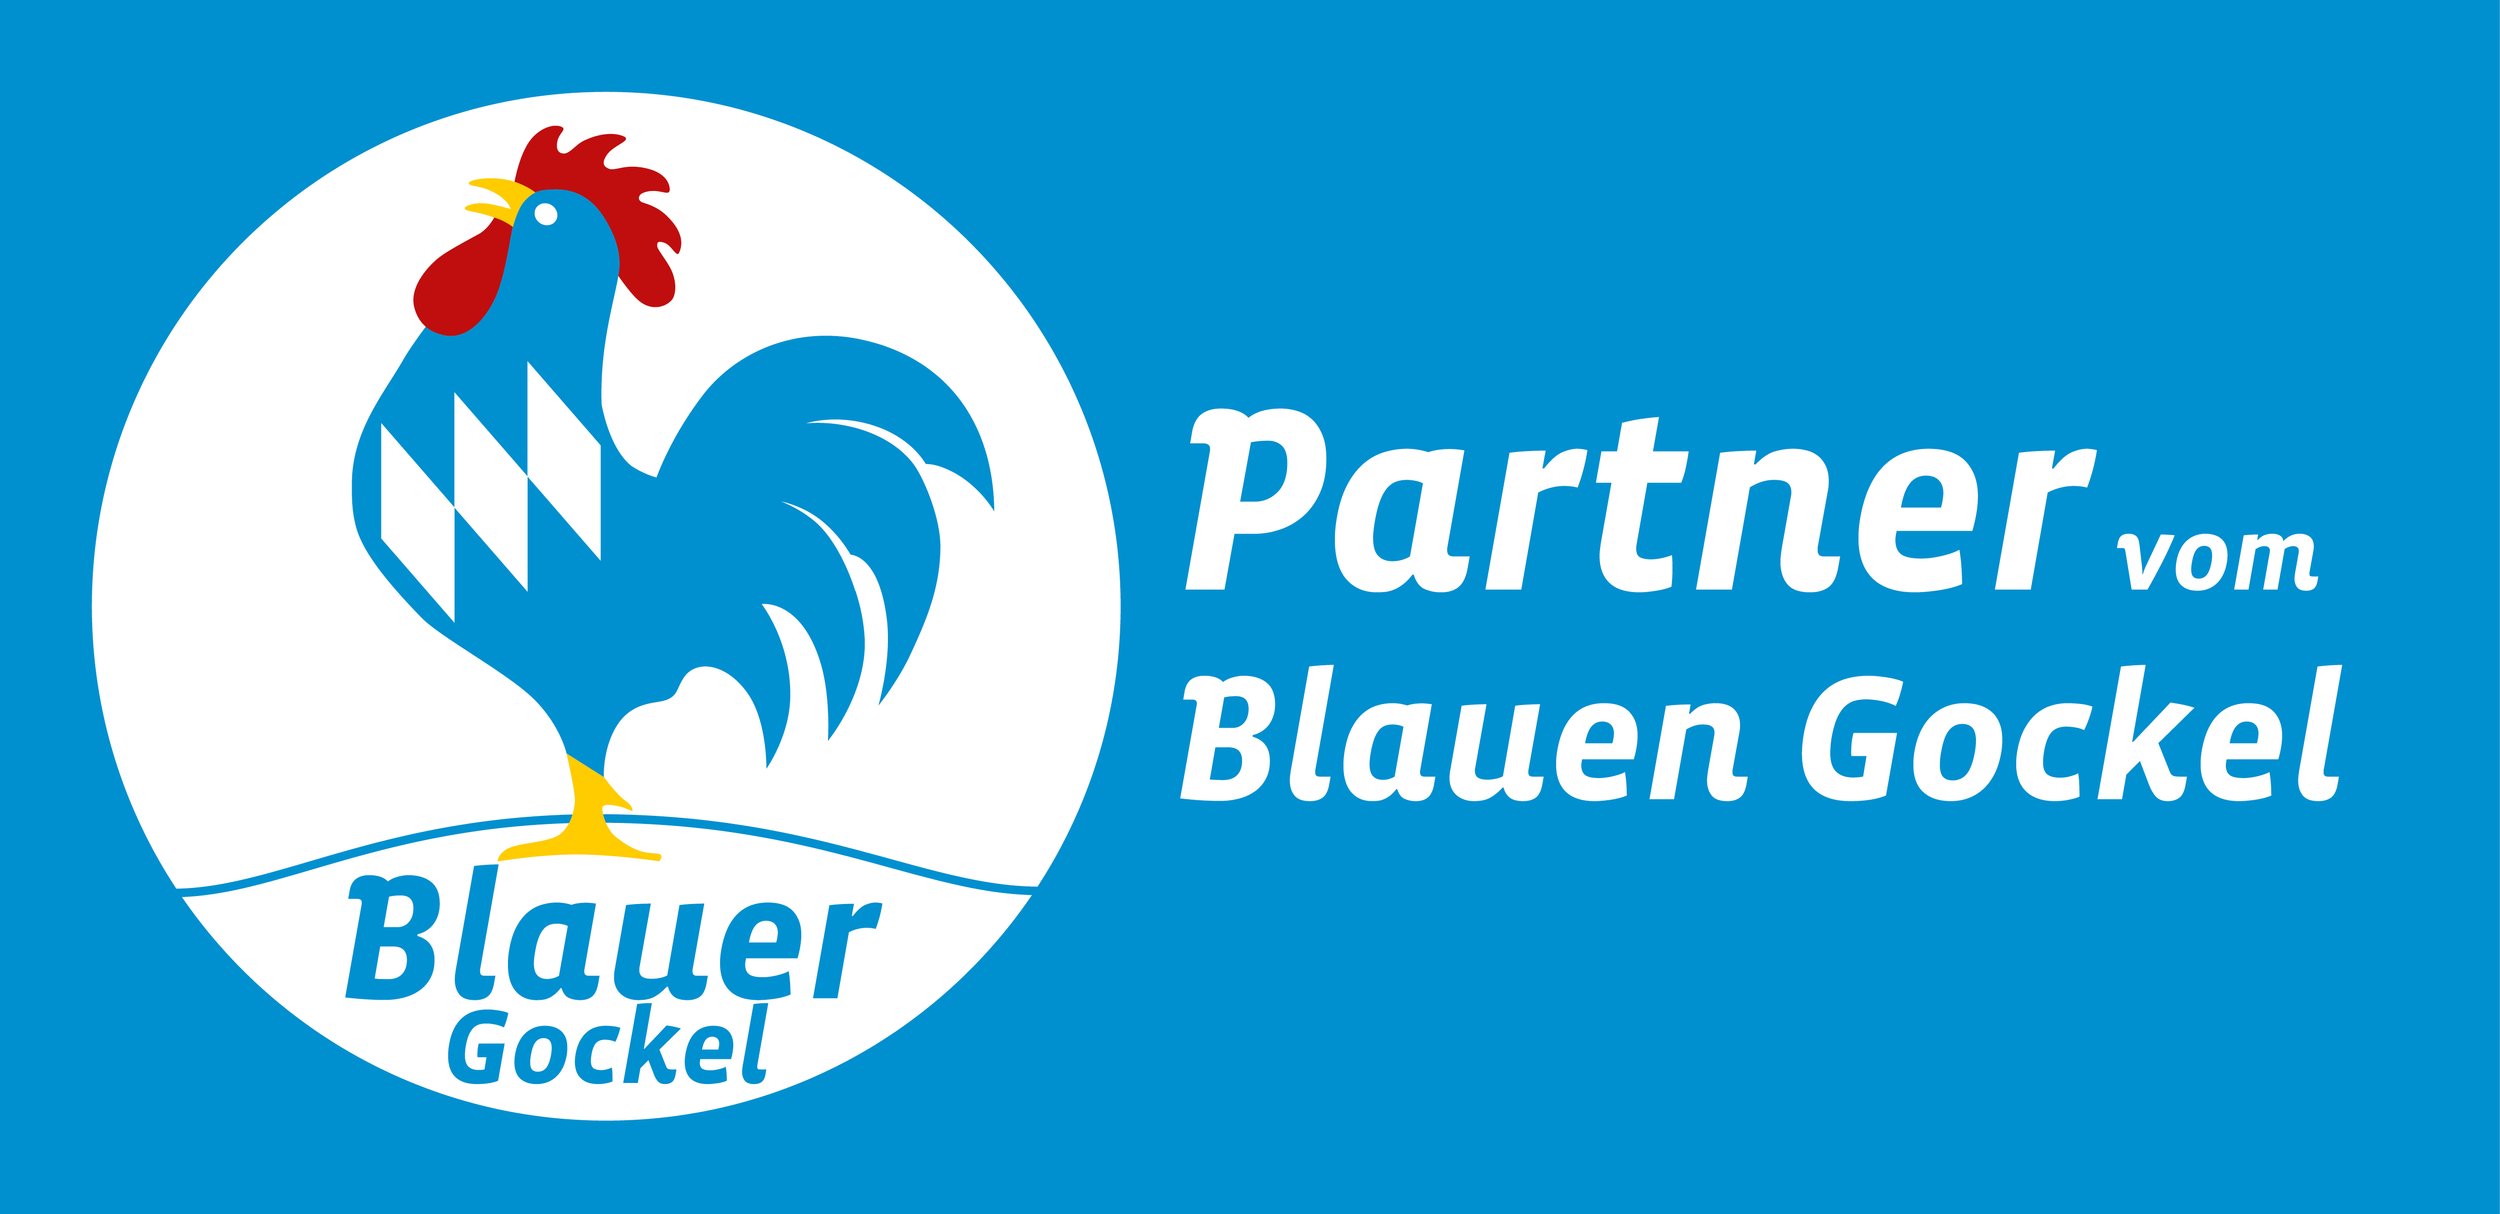 Blauer_Gockel_Partner_rgb.jpg